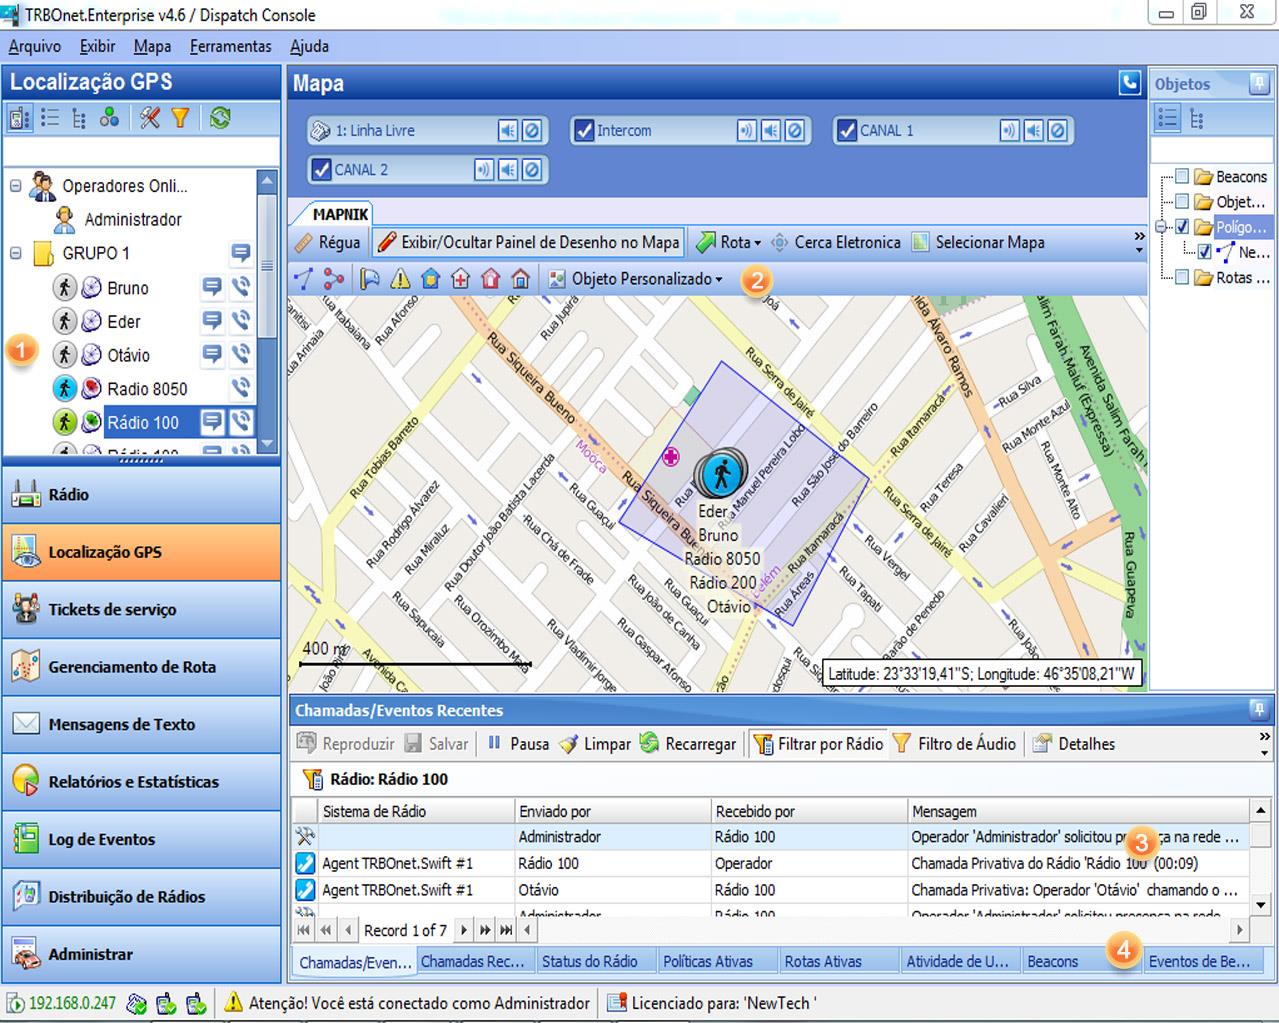 3. Tela de Localização GPS 3.1 Mapnik O Mapnik é uma fonte de mapa gratuita disponível na internet. É possível traçar as cercas eletrônicas diretamente neste mapa.